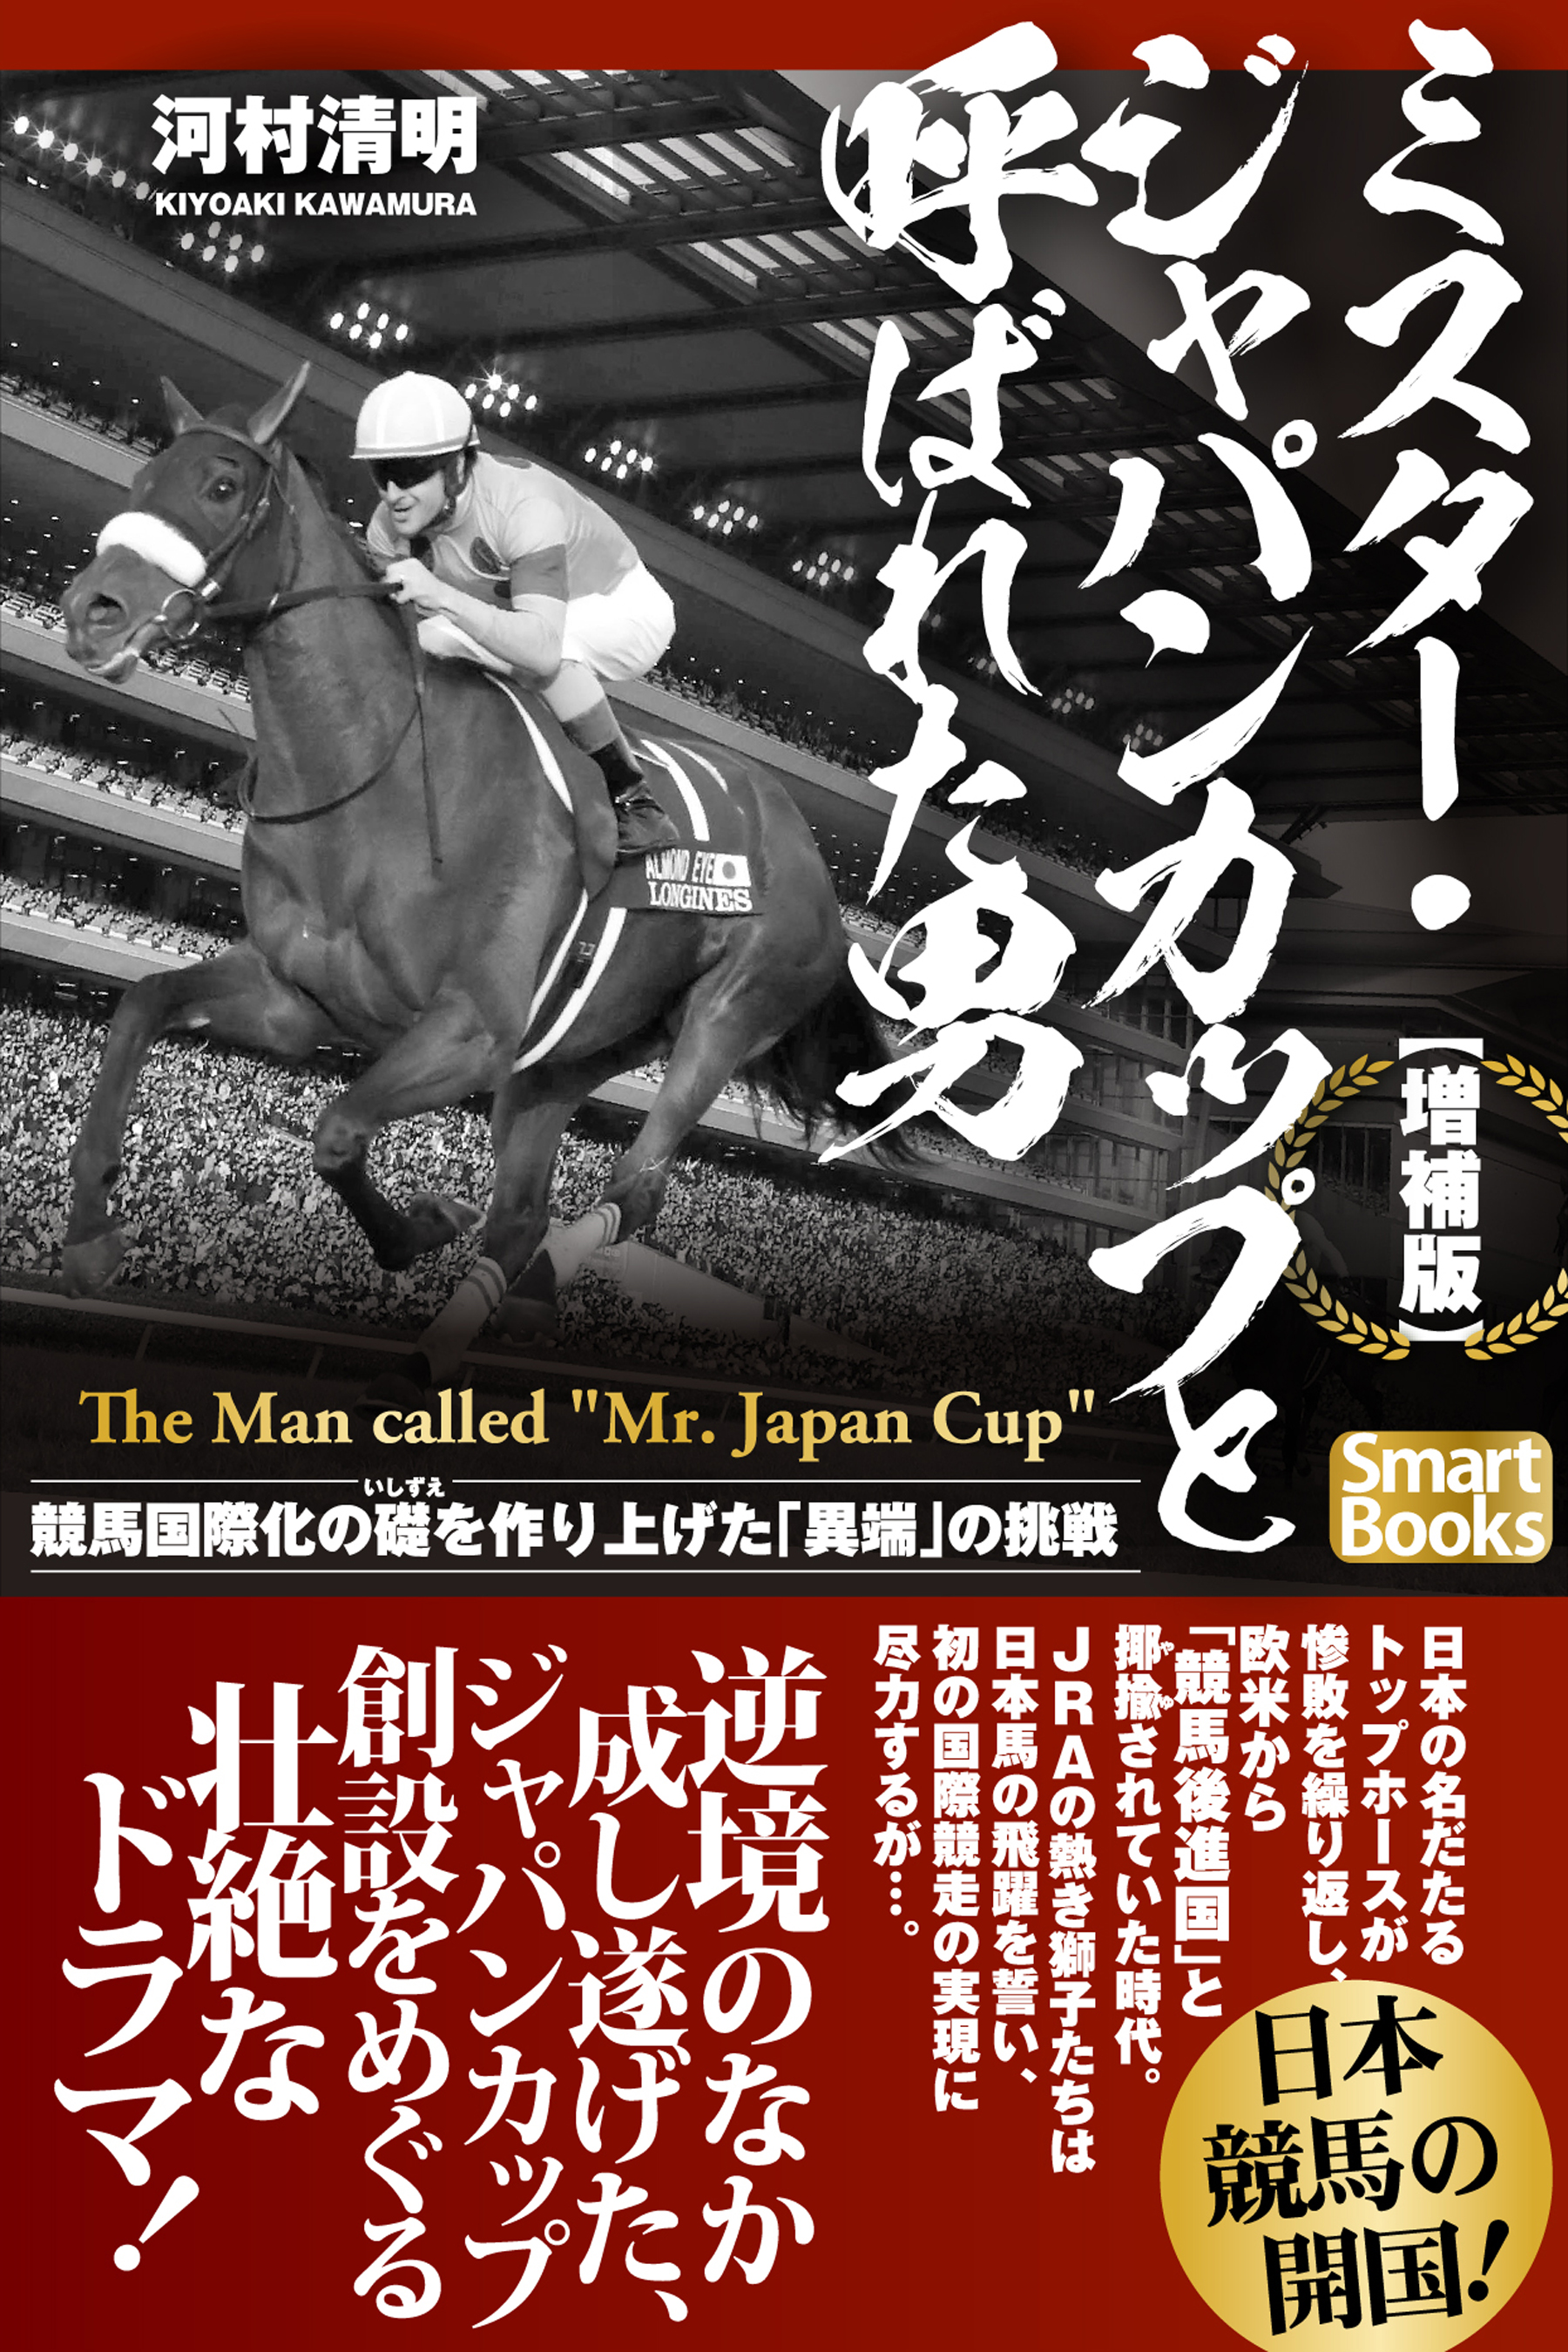 増補版】ミスター・ジャパンカップと呼ばれた男 競馬国際化の礎を作り上げた「異端」の挑戦